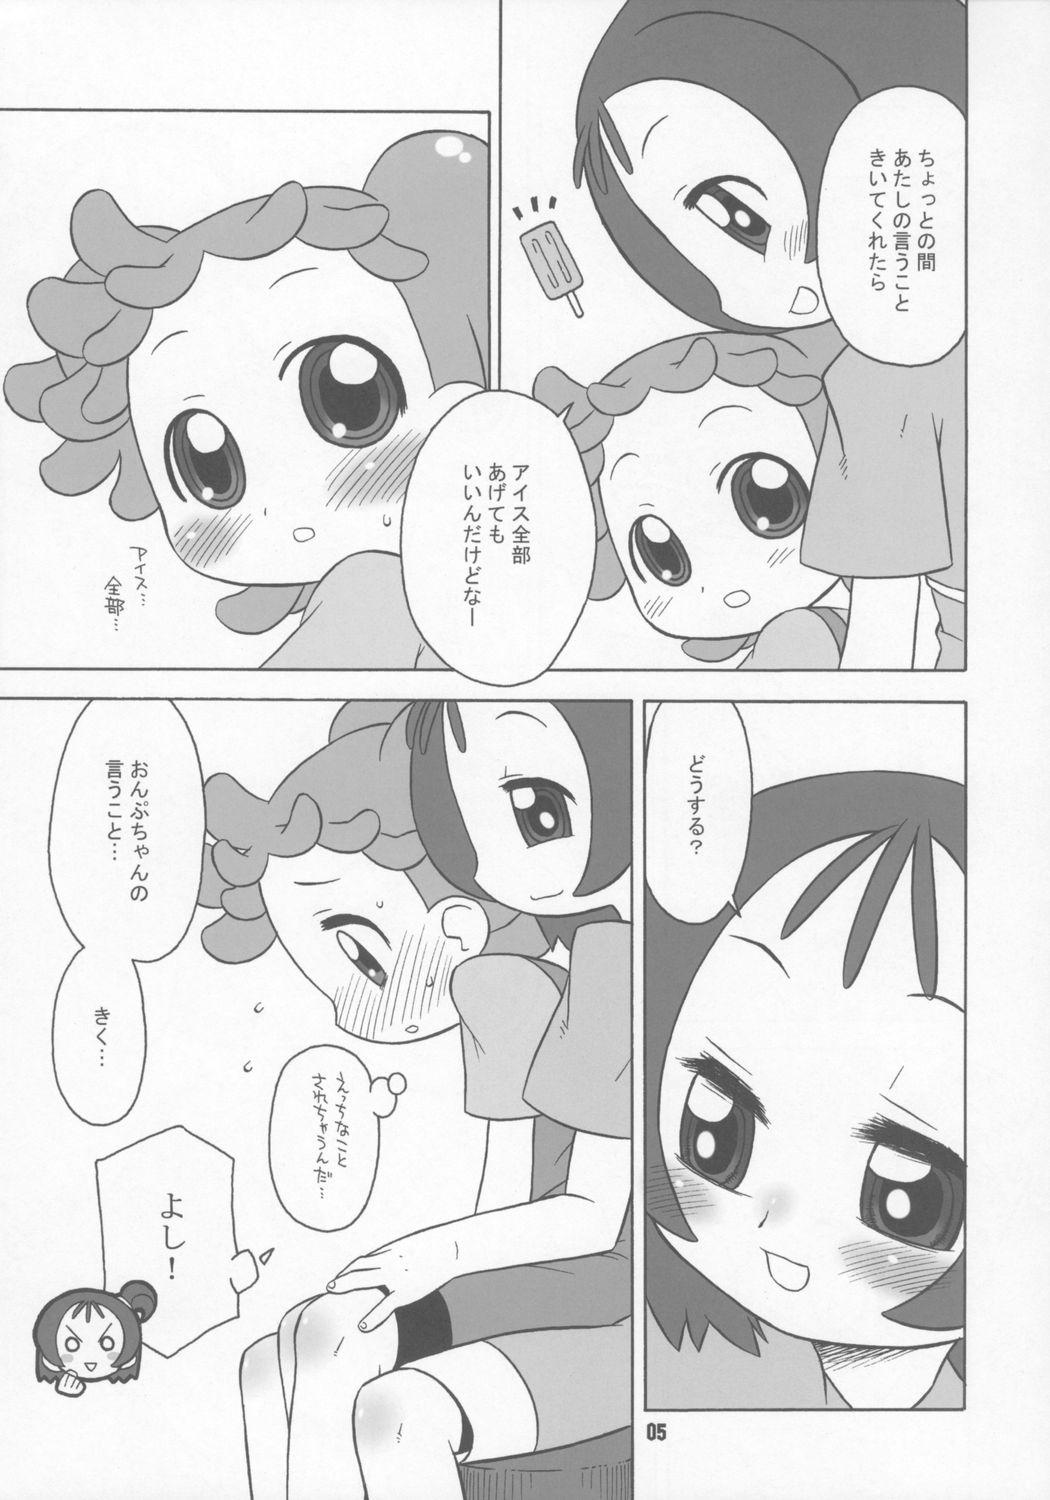 Lingerie Bokura wa mucha mo suru kedo. - Ojamajo doremi Ftv Girls - Page 4